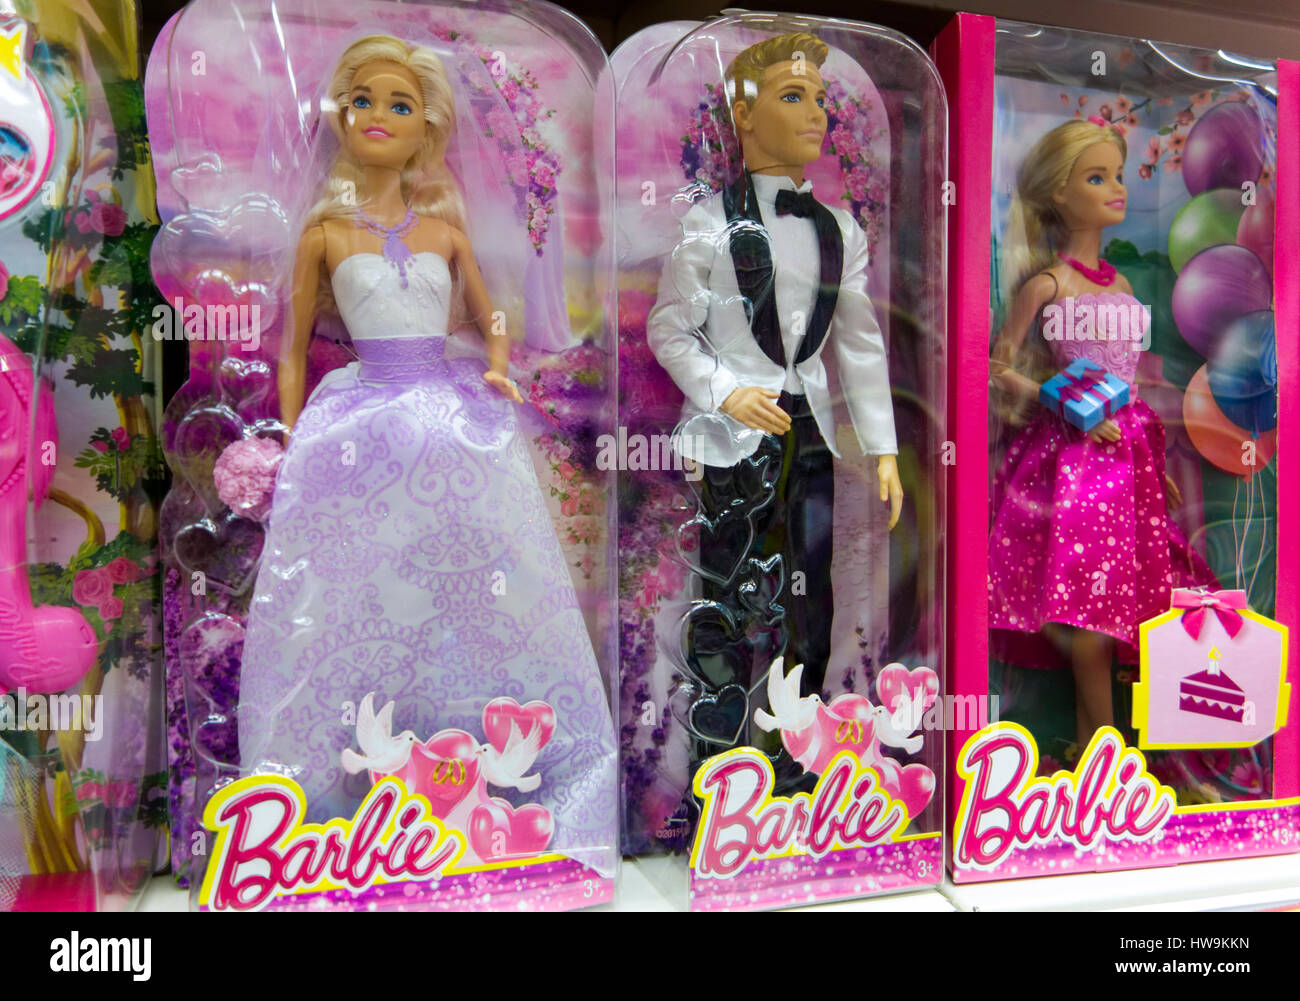 Barbie doll box Banque de photographies et d'images à haute résolution -  Alamy